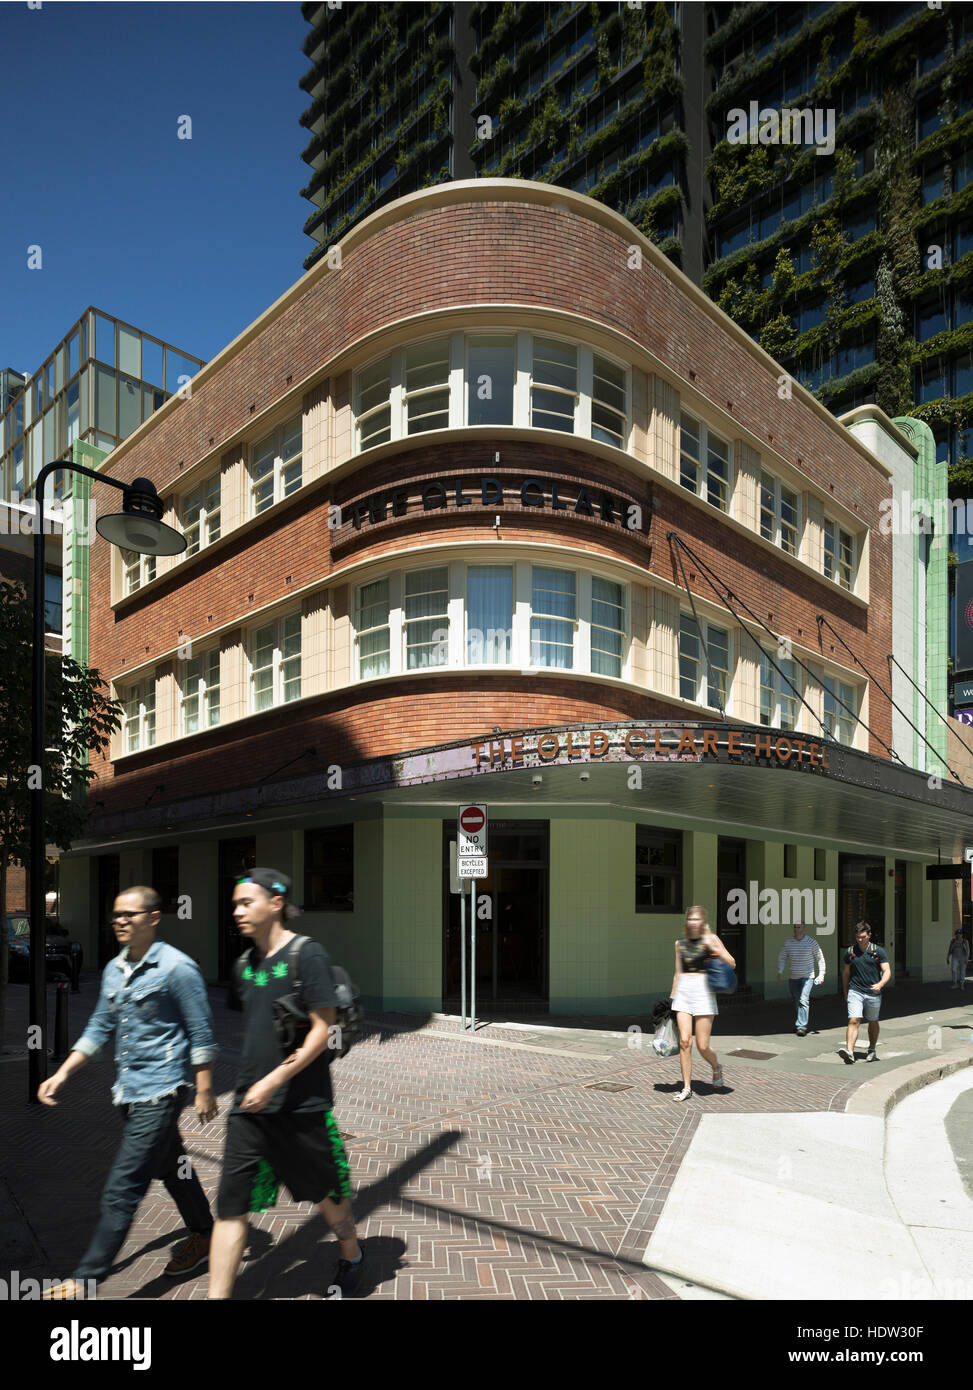 L'hotel come visto in corrispondenza della zona di spigolo di Broadway e a Kensington Street. Il vecchio Hotel Clare, Sydney, Australia. Architetto: Tonkin Zulaikha Greer, 2015. Foto Stock